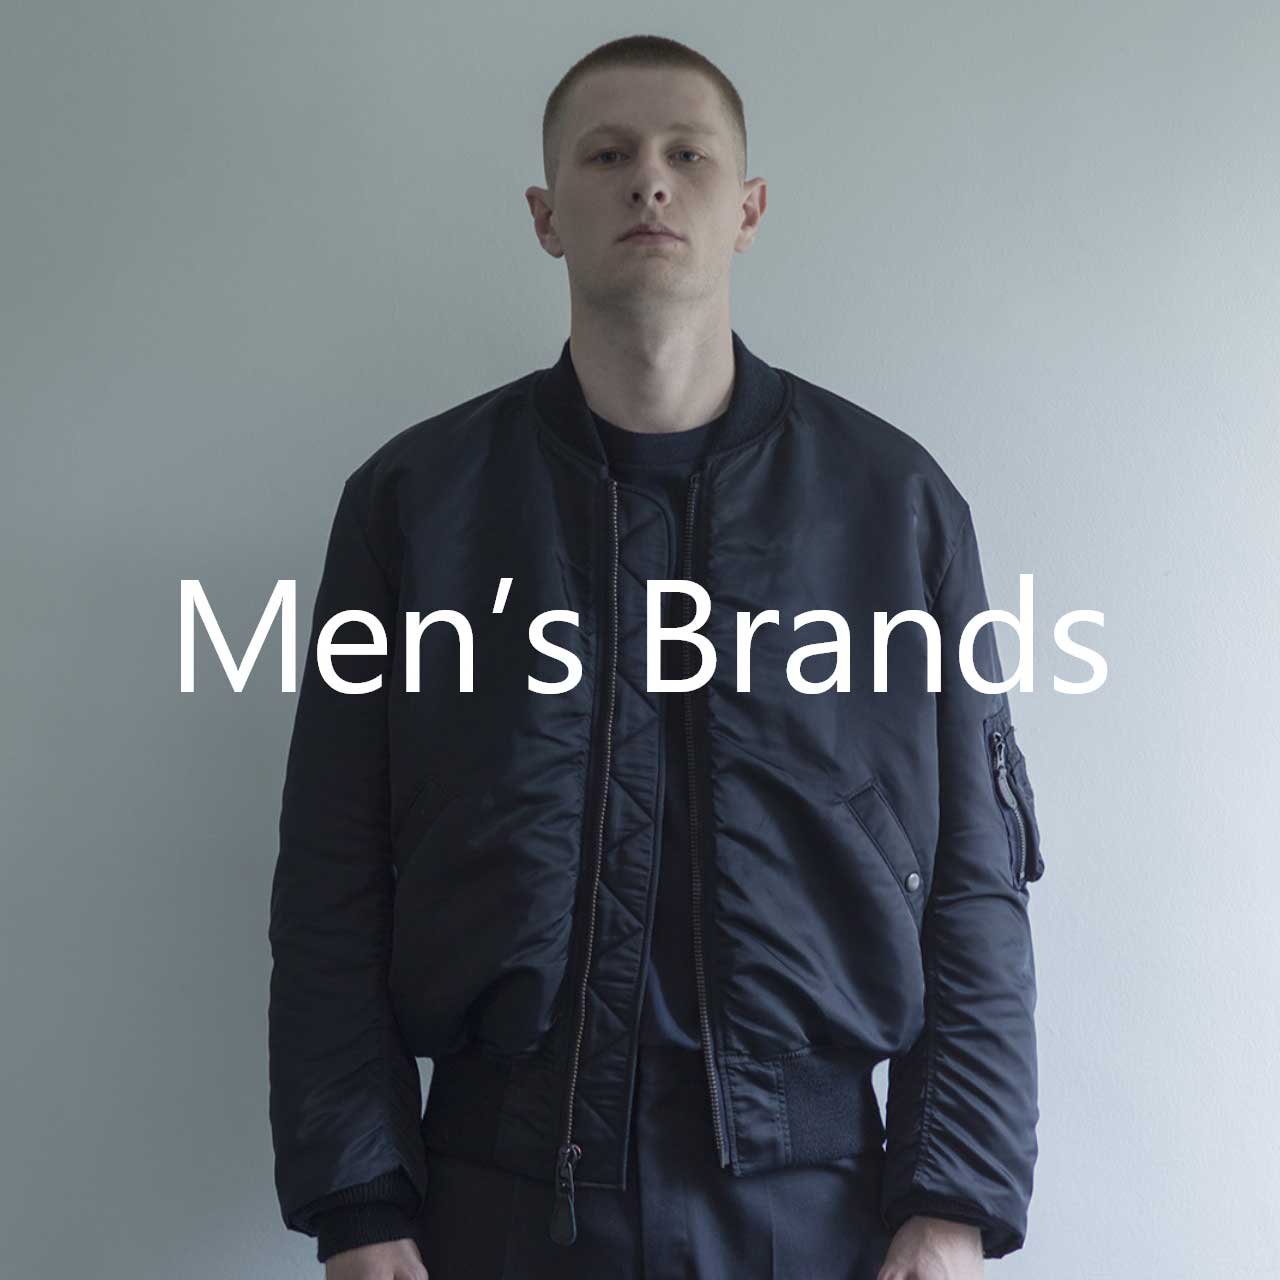 Men's Brands